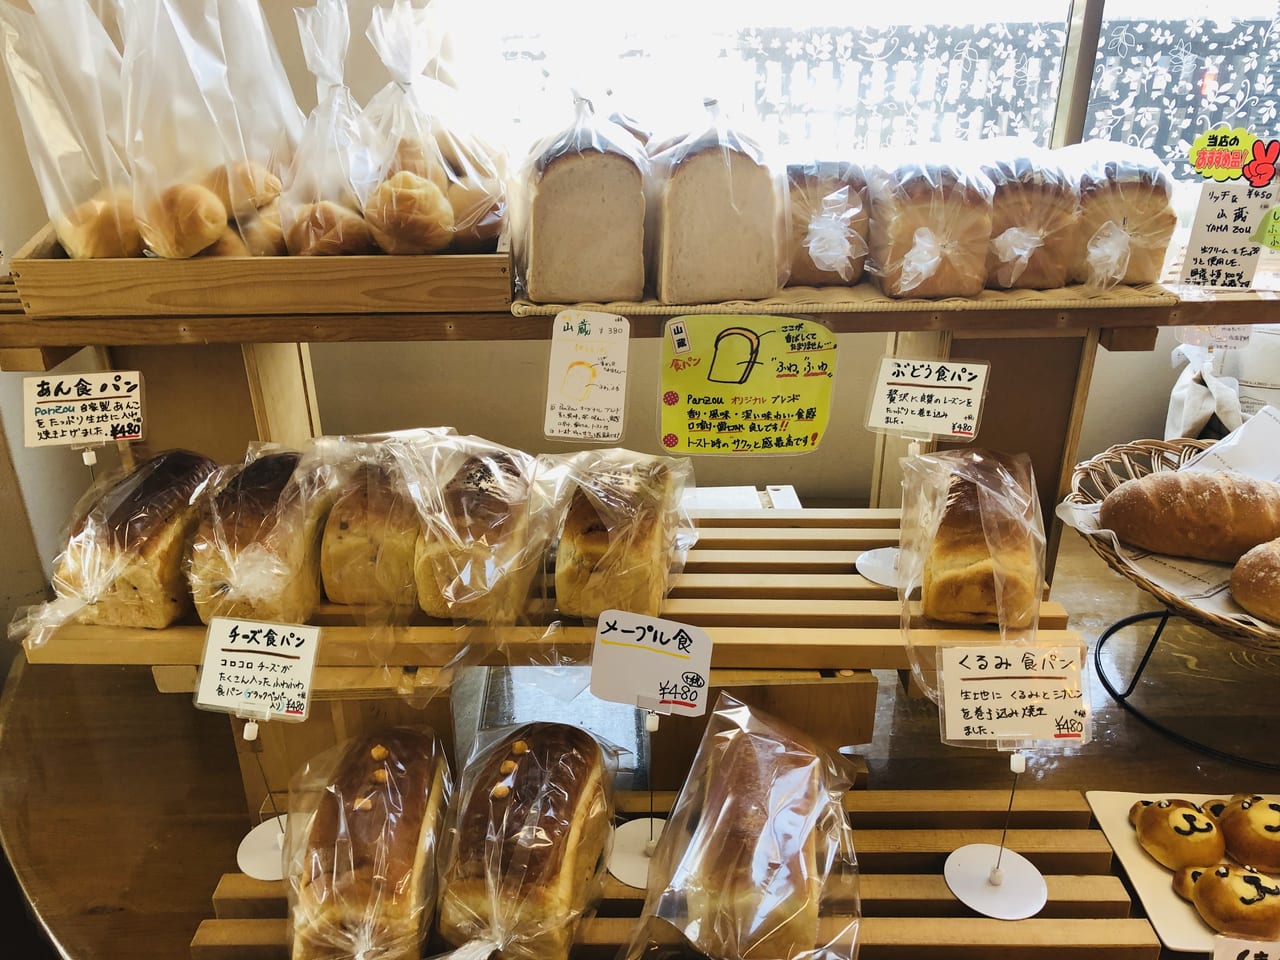 栃木市 倭町のパン屋 Panzou さんには珍しい食パンがたくさんありました 号外net 栃木市